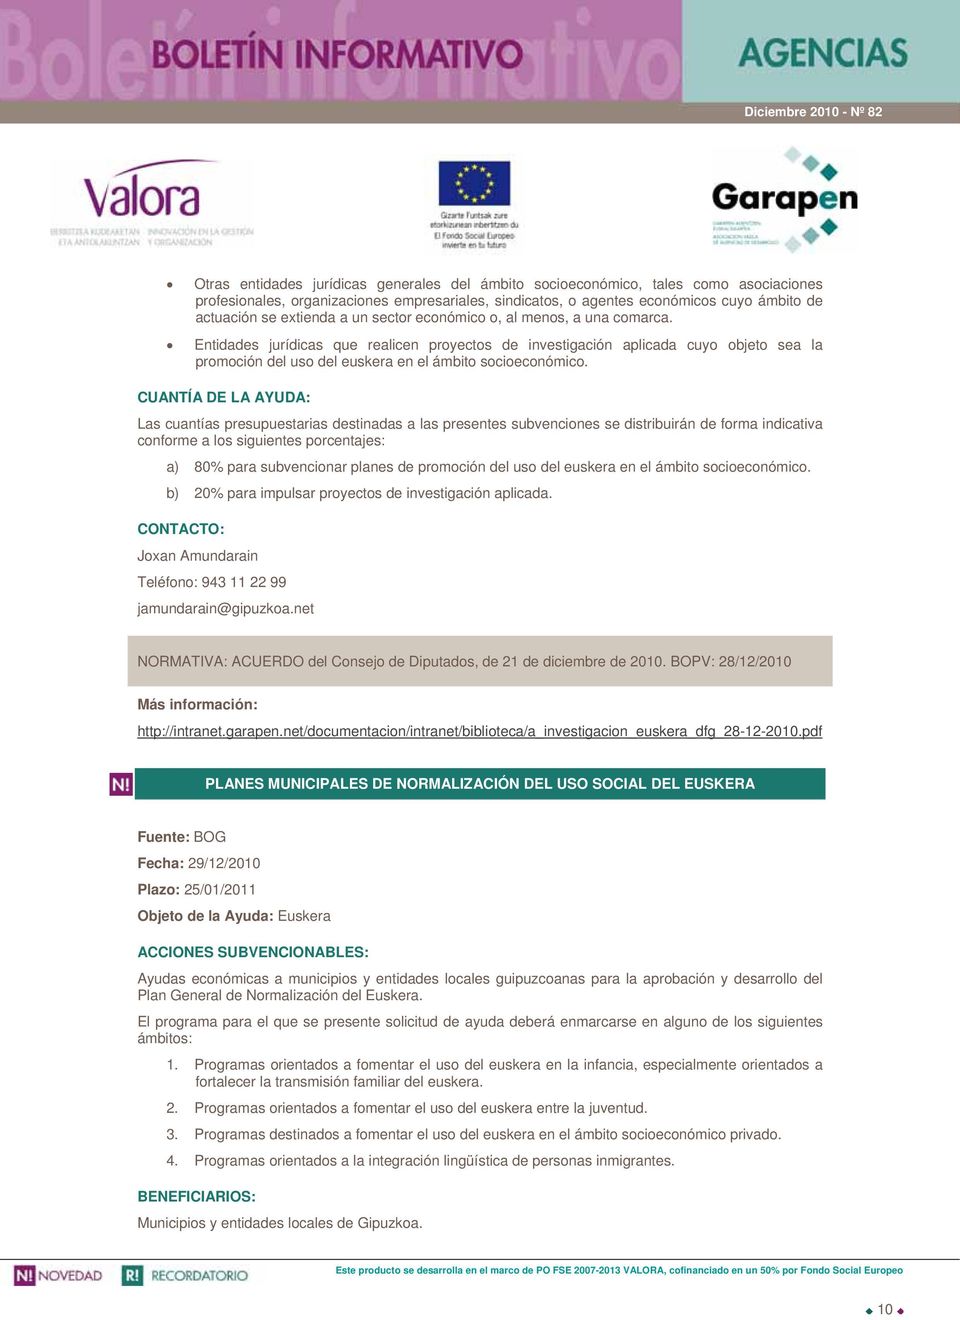 Entidades jurídicas que realicen proyectos de investigación aplicada cuyo objeto sea la promoción del uso del euskera en el ámbito socioeconómico.